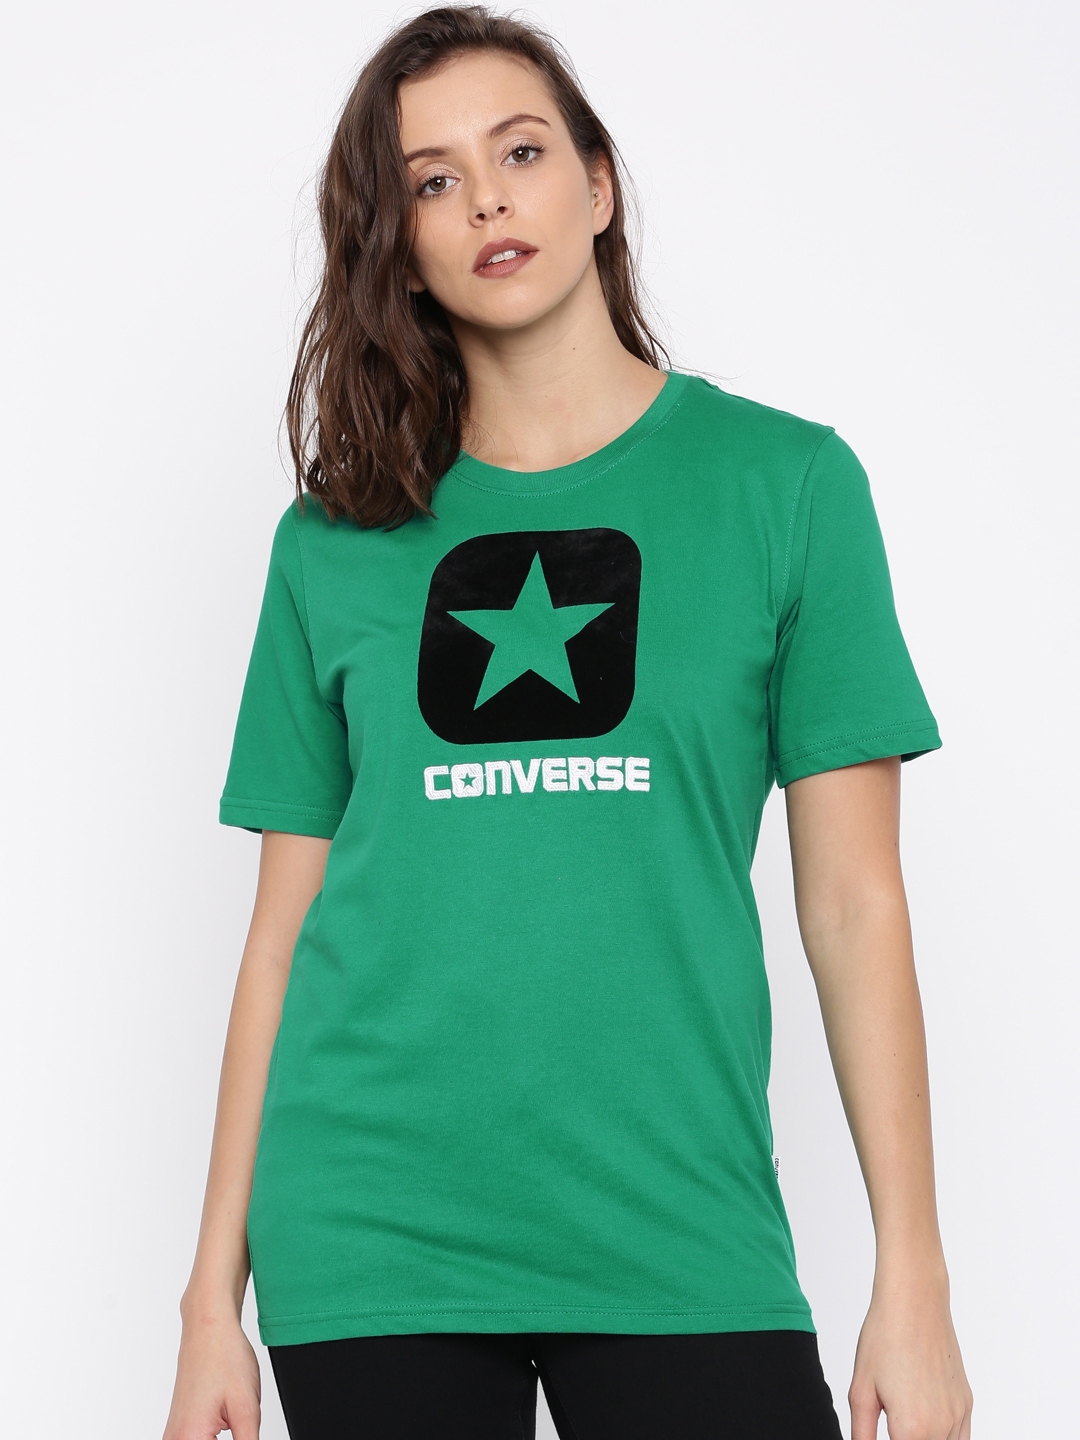 converse t shirt myntra